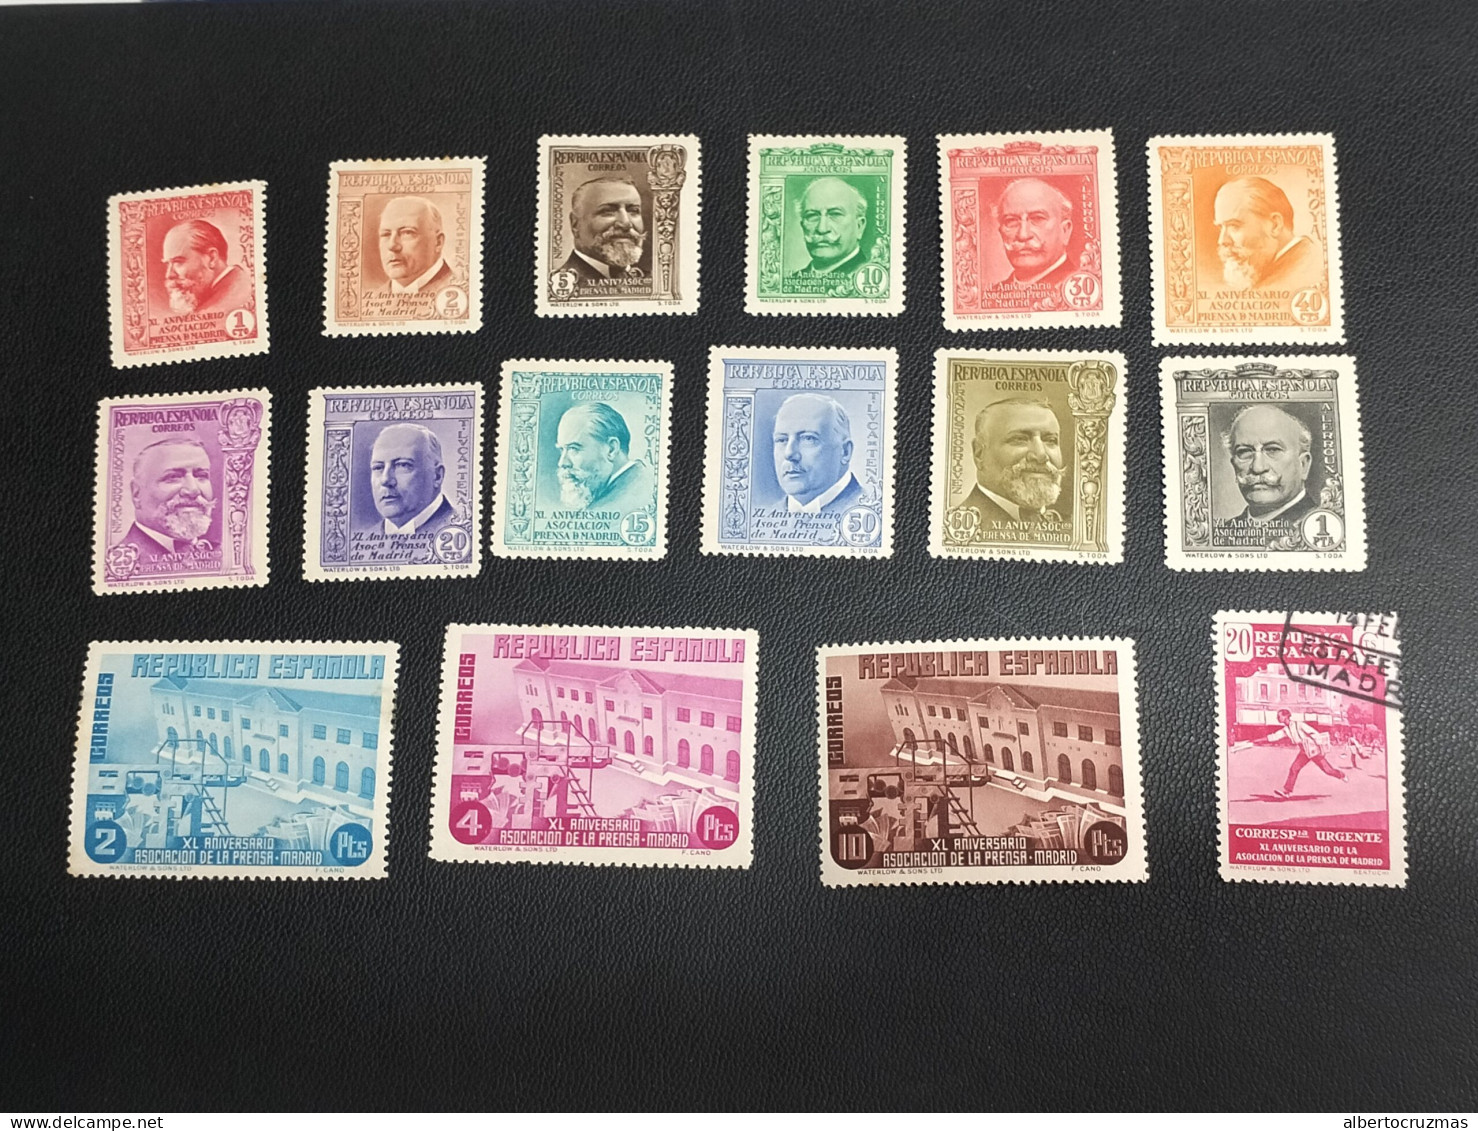 España Sellos Serie Completa Republica Prensa Edifil 695/10 Sellos Nuevos *NH, Usados O - Used Stamps